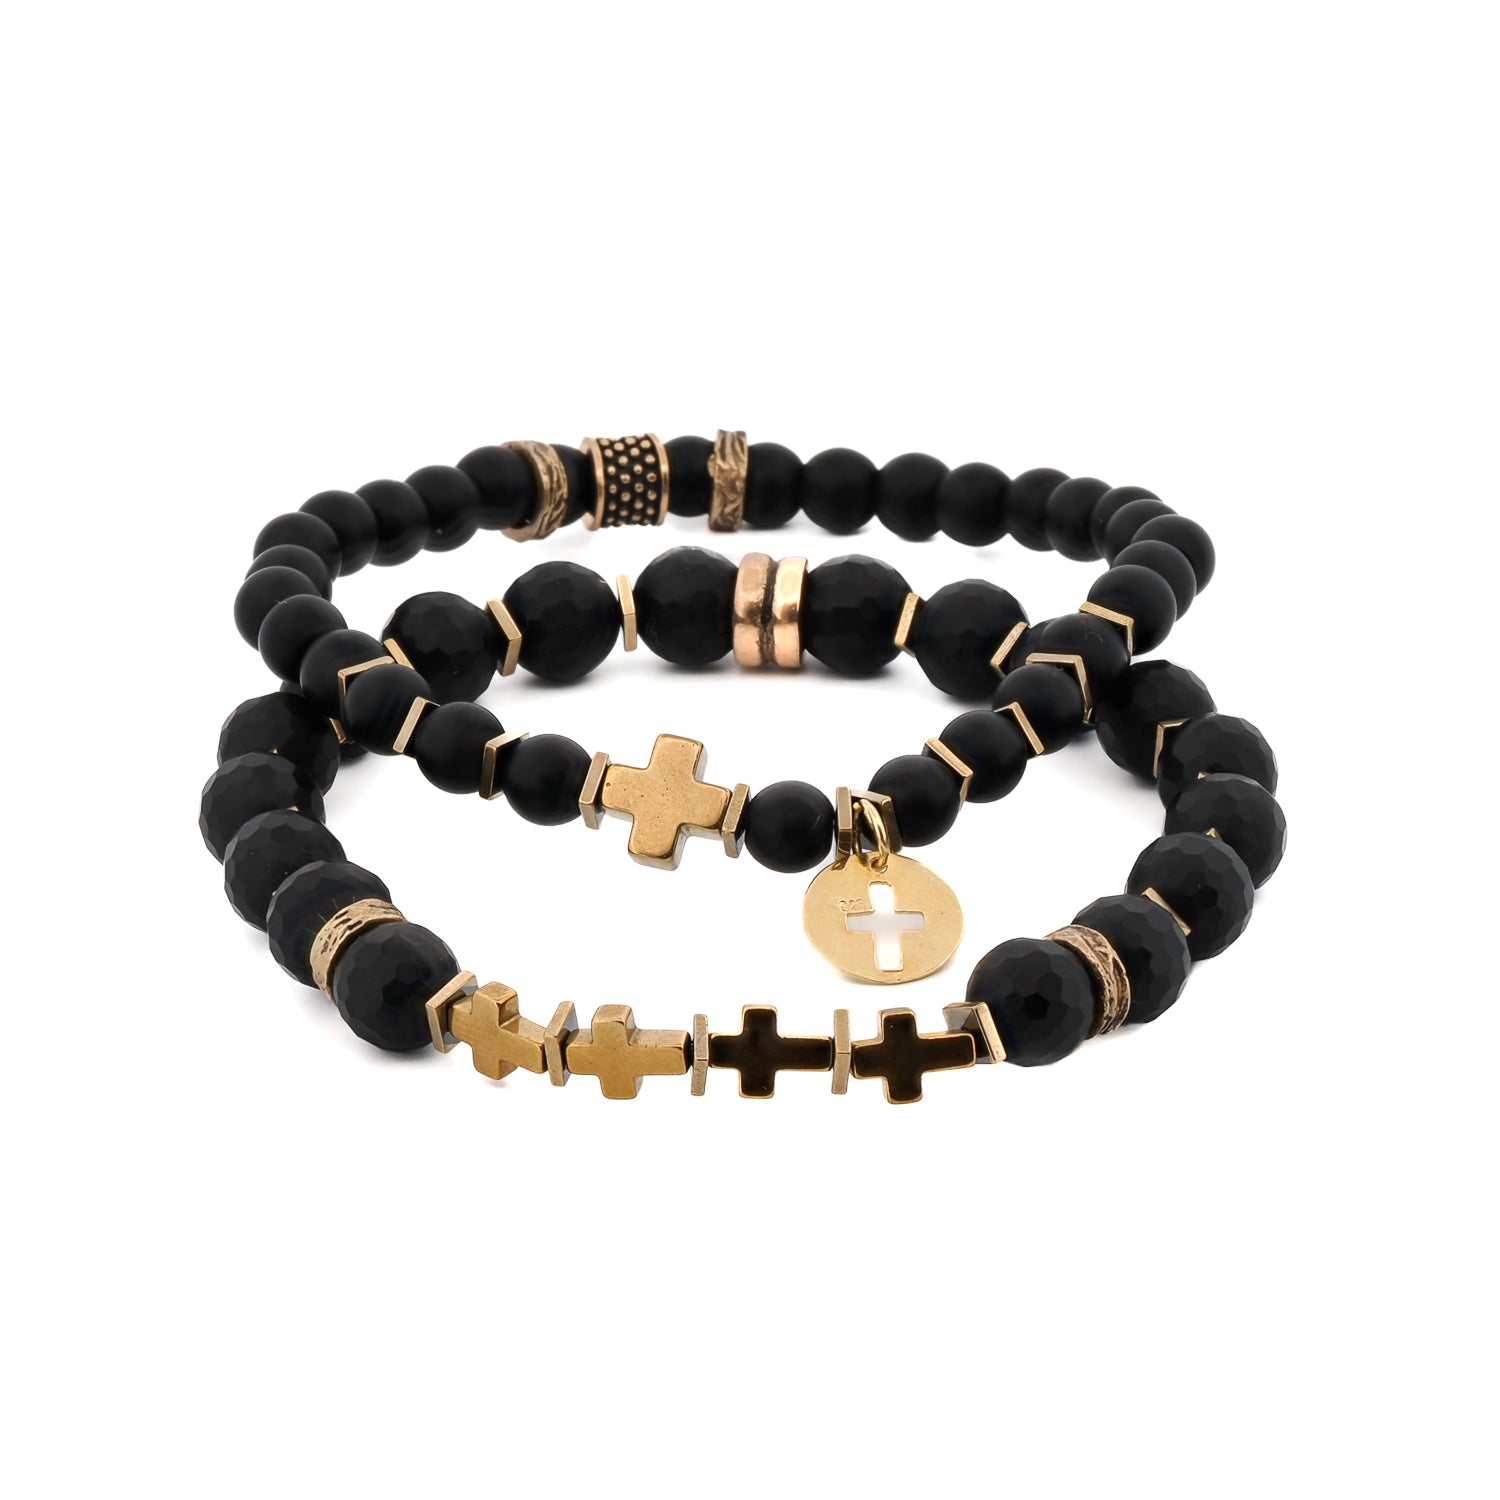 Matte Black Onyx Stone Gold Cross Charm Wise Belief Bracelet Set